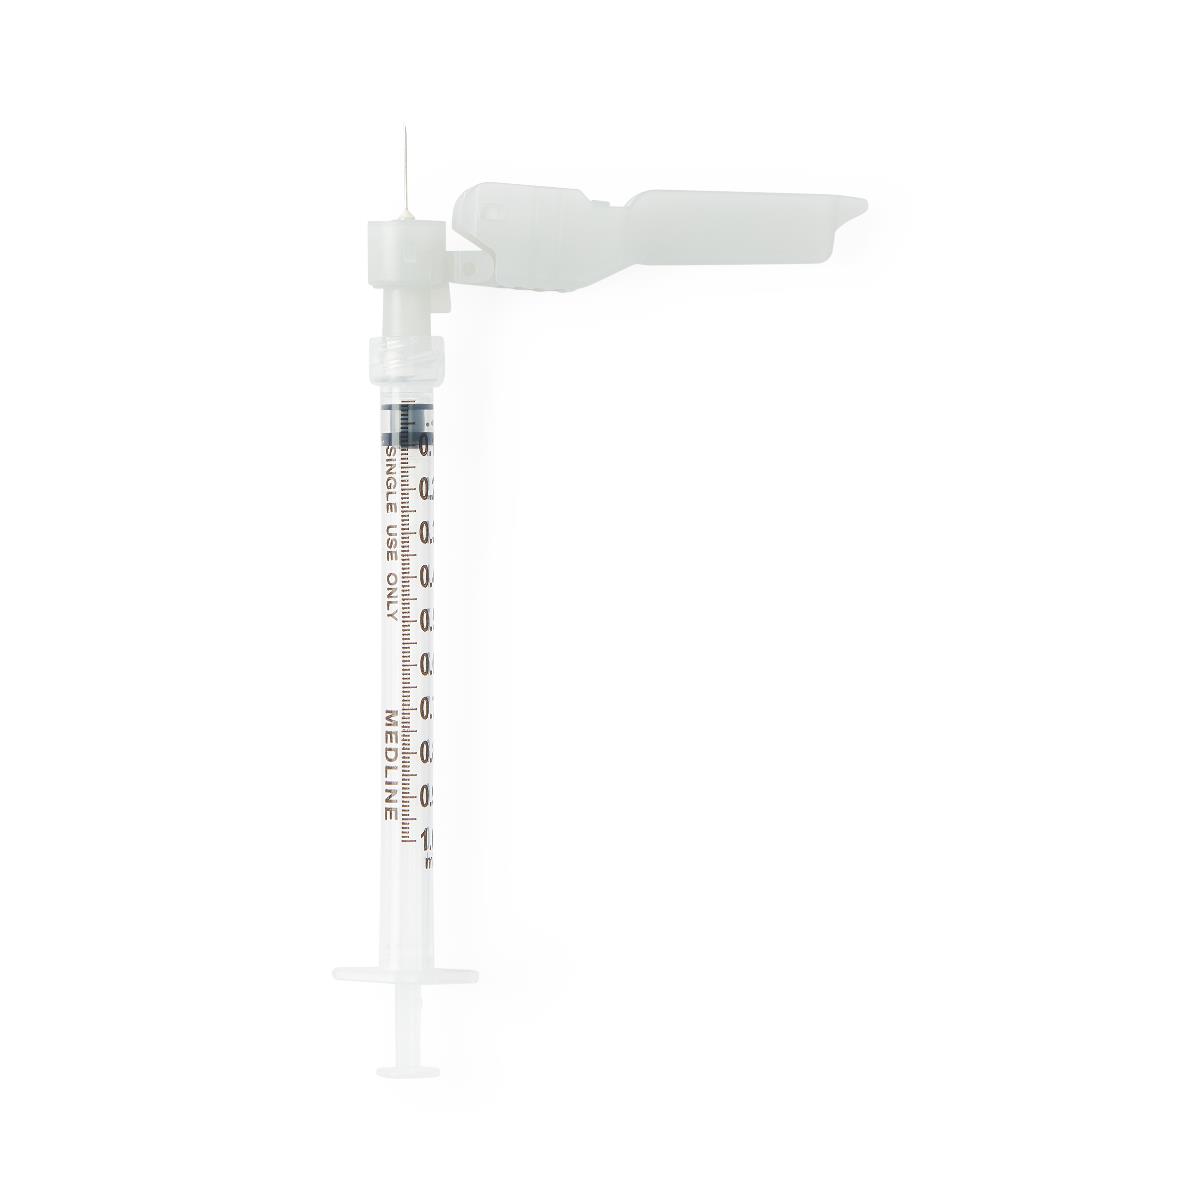 Medline Safety Syringes with Needle